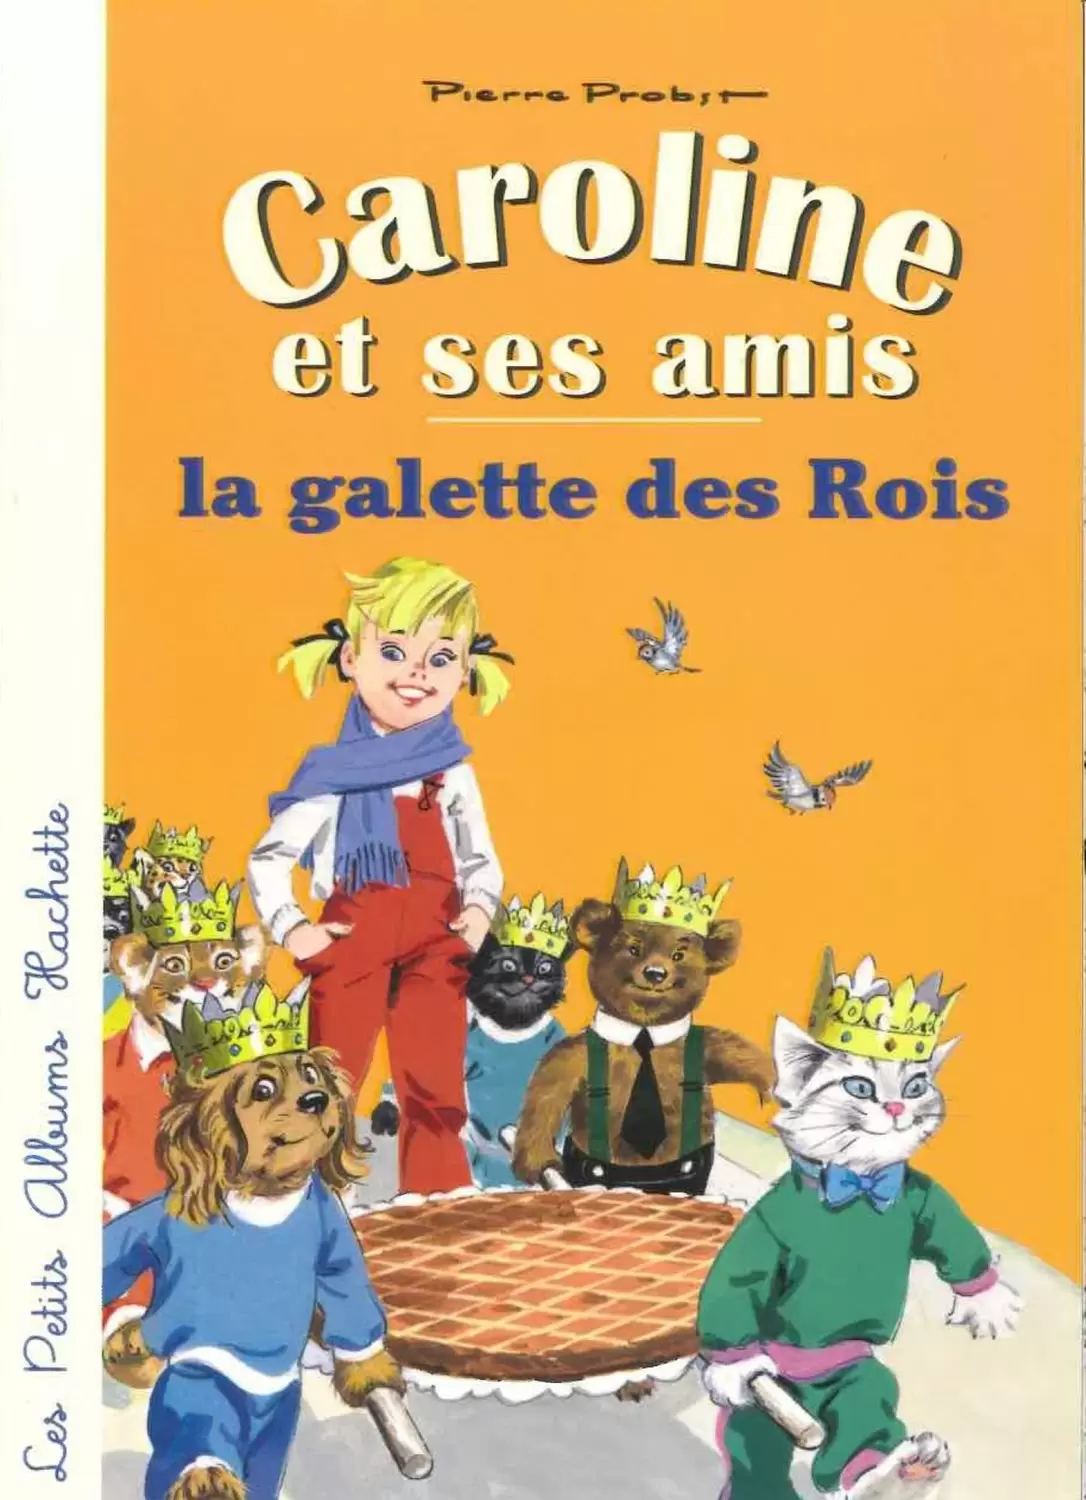 Caroline - Caroline et ses amis - La galette des rois